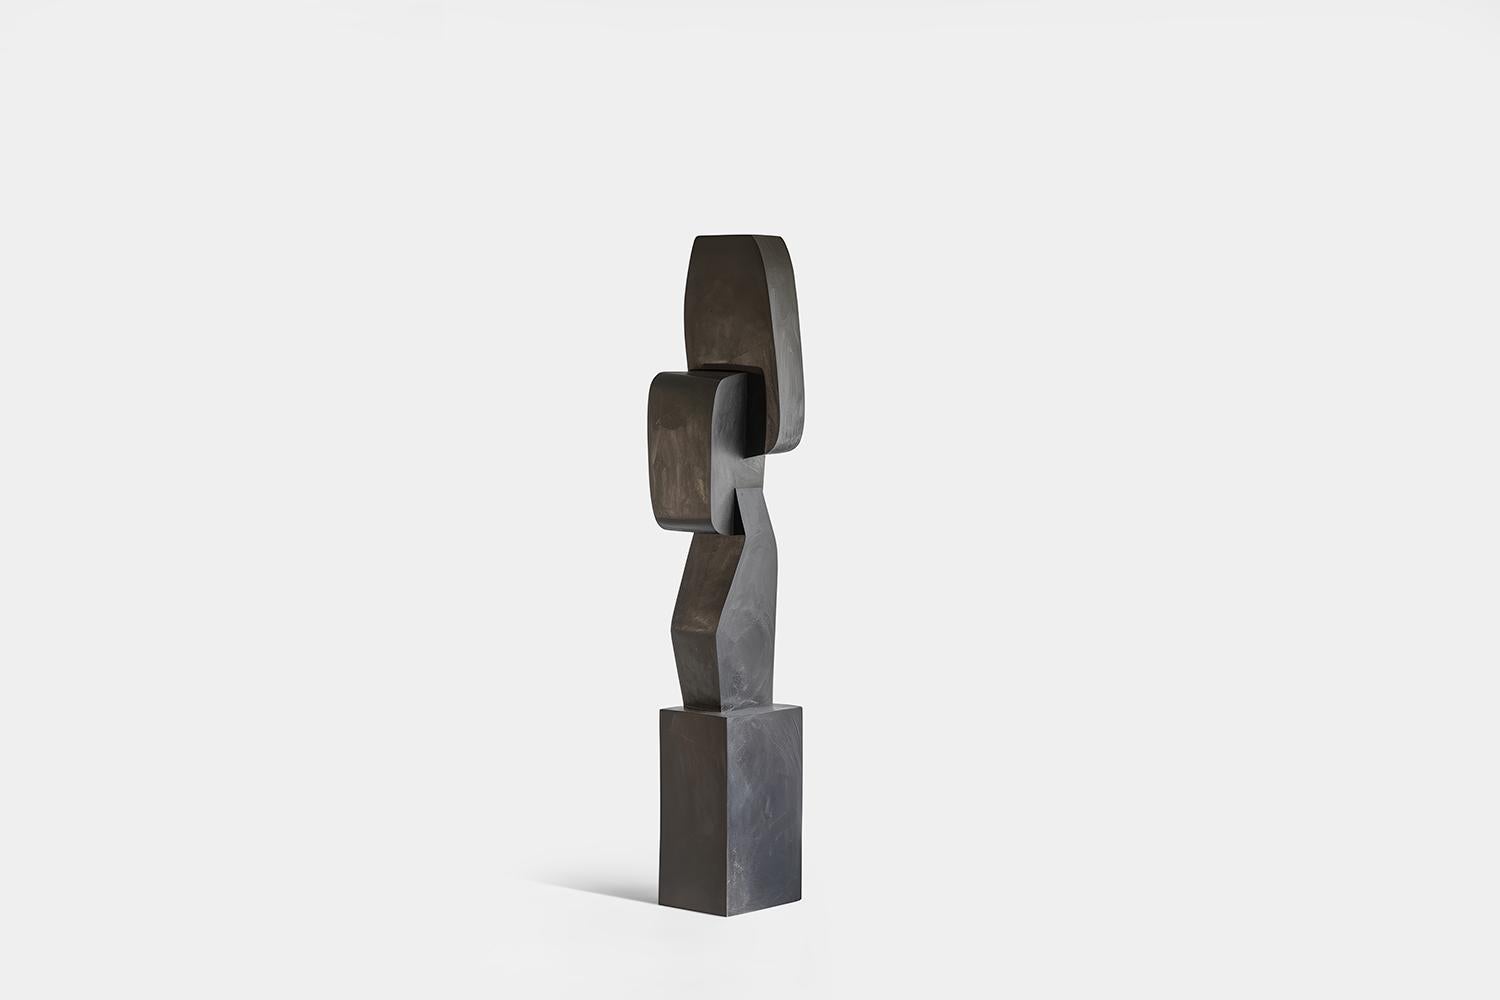 Sculpture biomorphique en bois sculpté dans le style d'Isamu Noguchi, Unseen Force 23 par Joel Escalona


Cette sculpture monolithique, conçue par l'artiste talentueux Joel Escalona, est un exemple impressionnant de la beauté de l'artisanat.